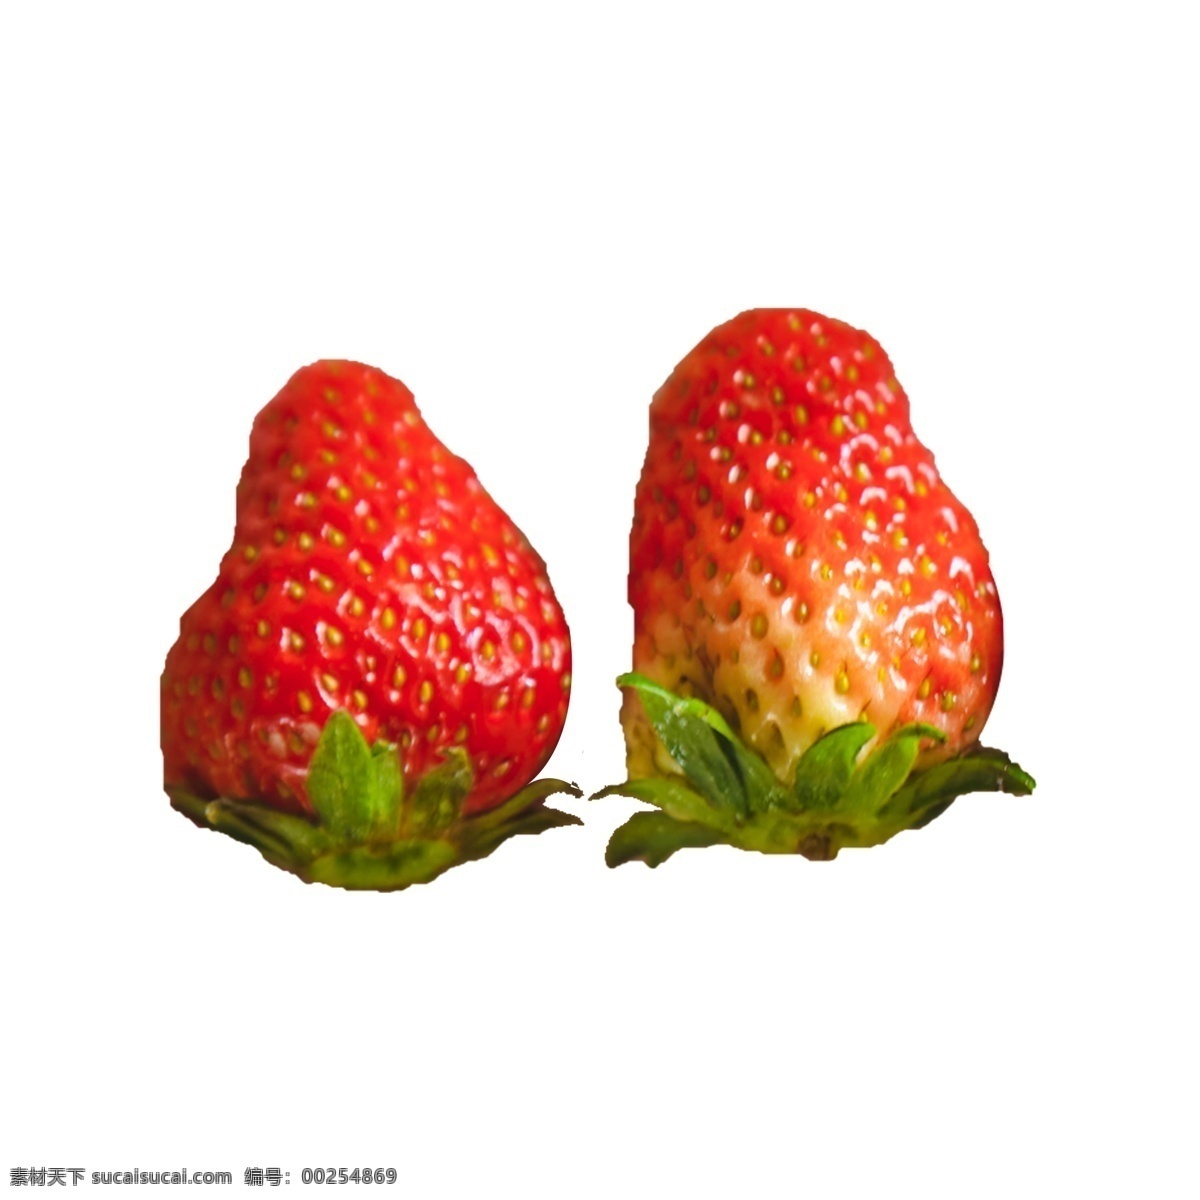 两个 新鲜 草莓 两个草莓 组合 绿叶 叶子 植物 水果 美味 甜食 甘甜 水润 多汁 红色